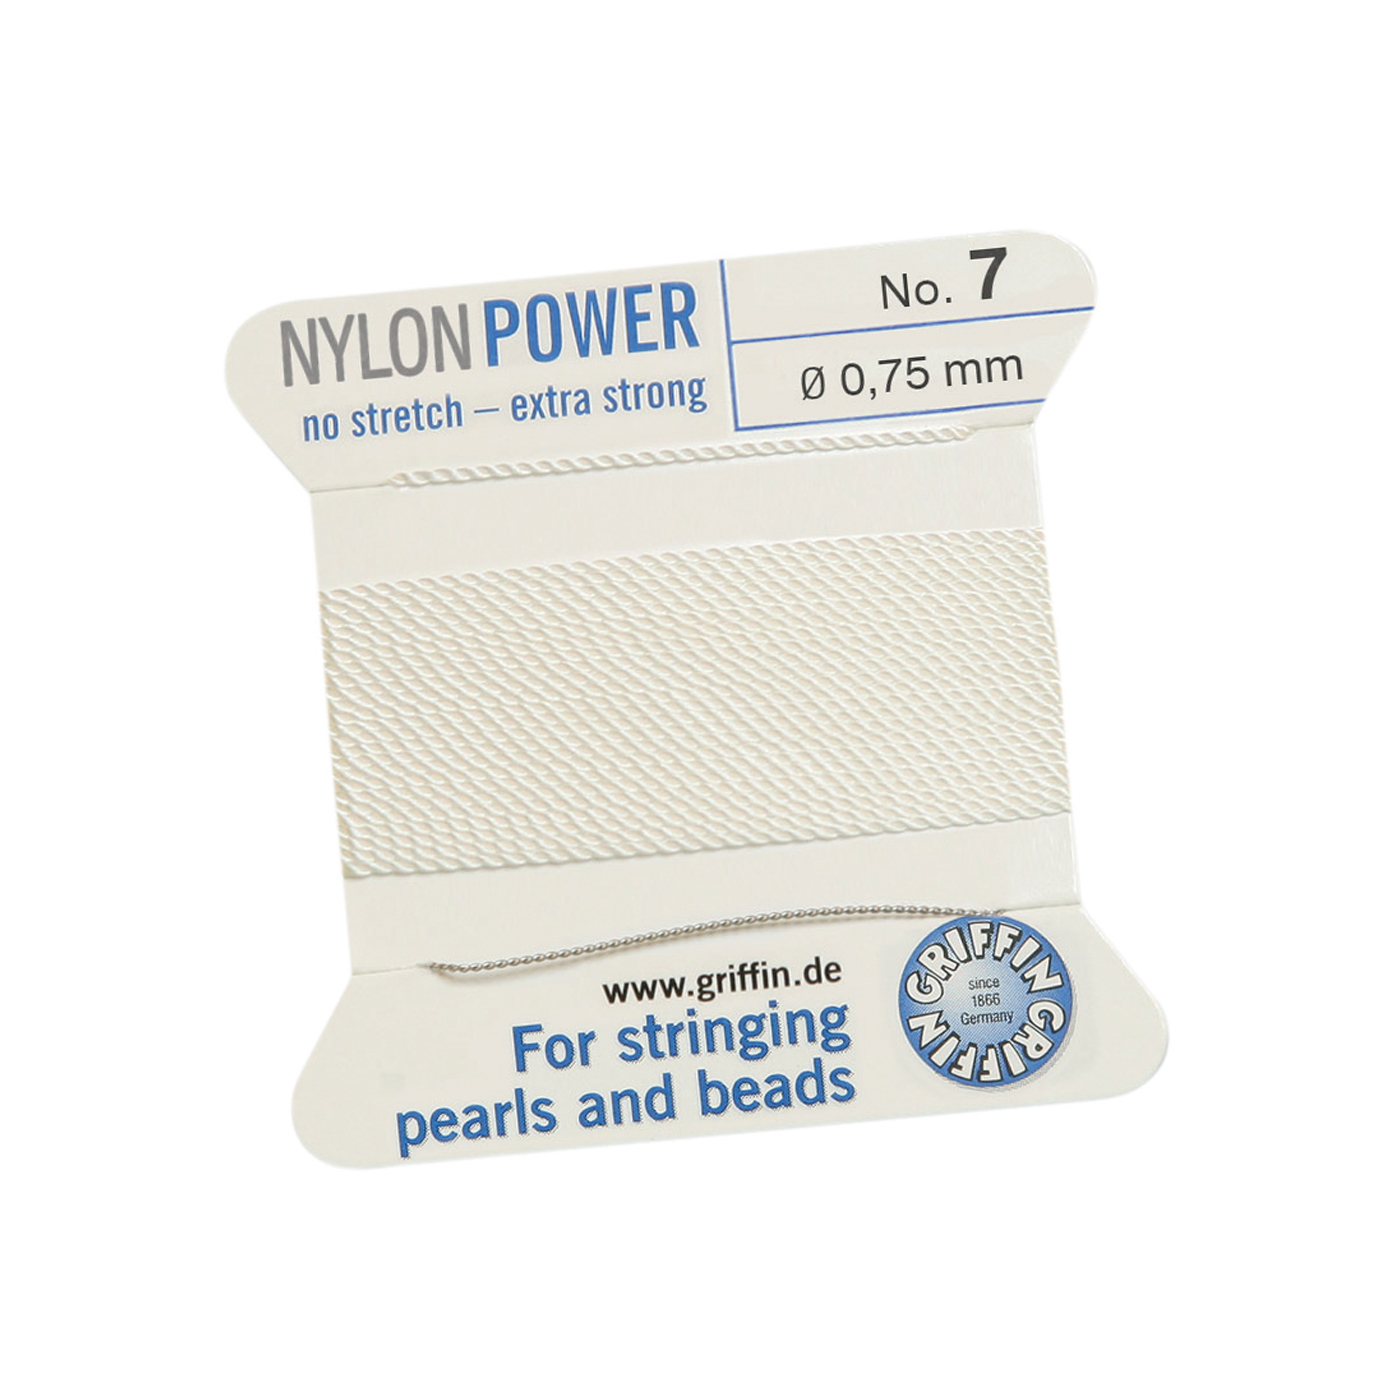 Bead Cord NylonPower, White, No. 7 - 2 m